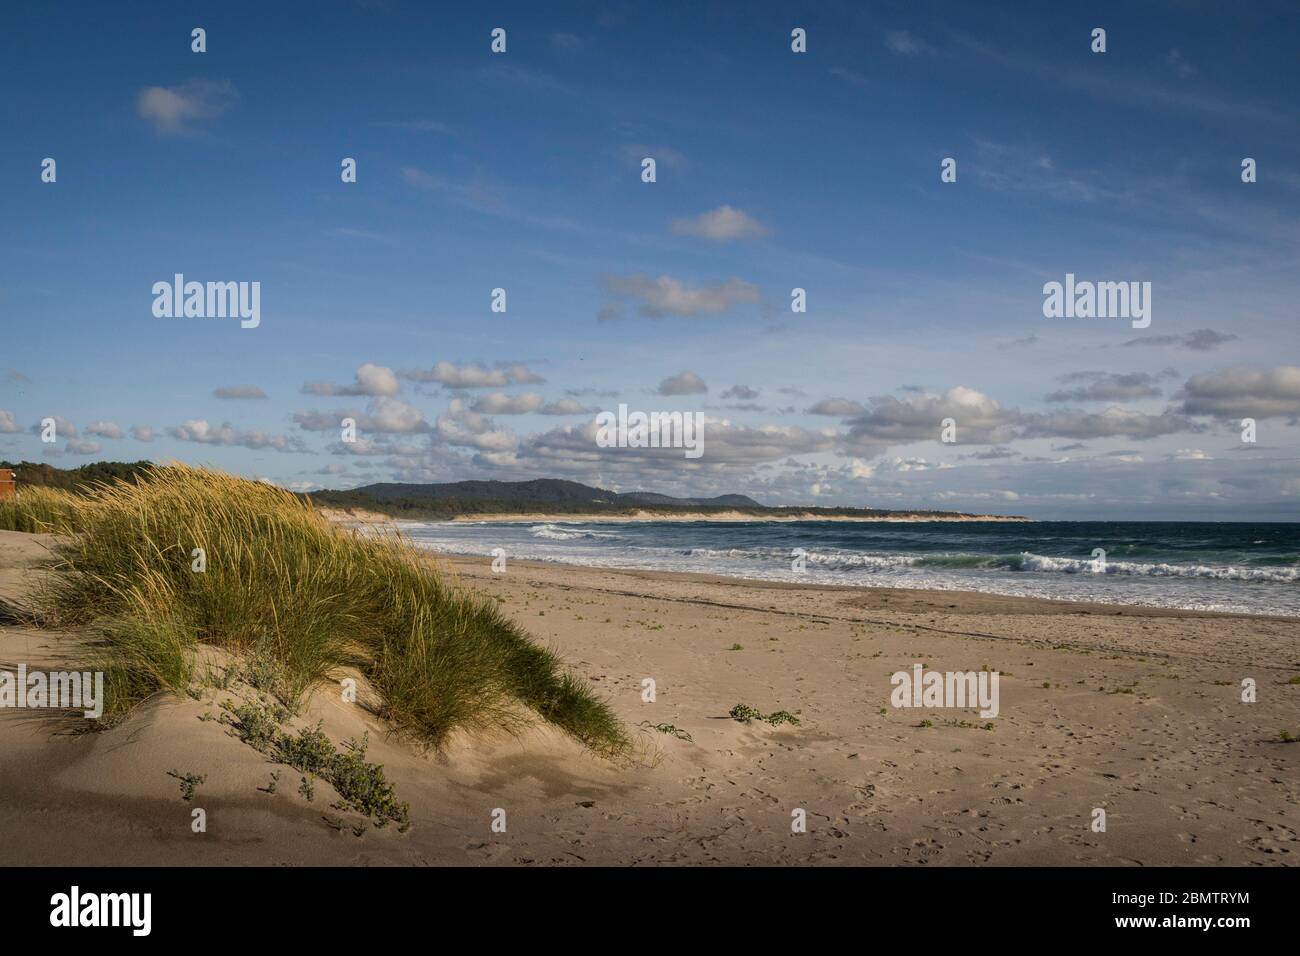 Paesaggio desertato spiaggia con dune erbose sulla sabbia e nuvole nel cielo blu. Spiaggia vuota. Tranquillo e tranquillo. Foto Stock